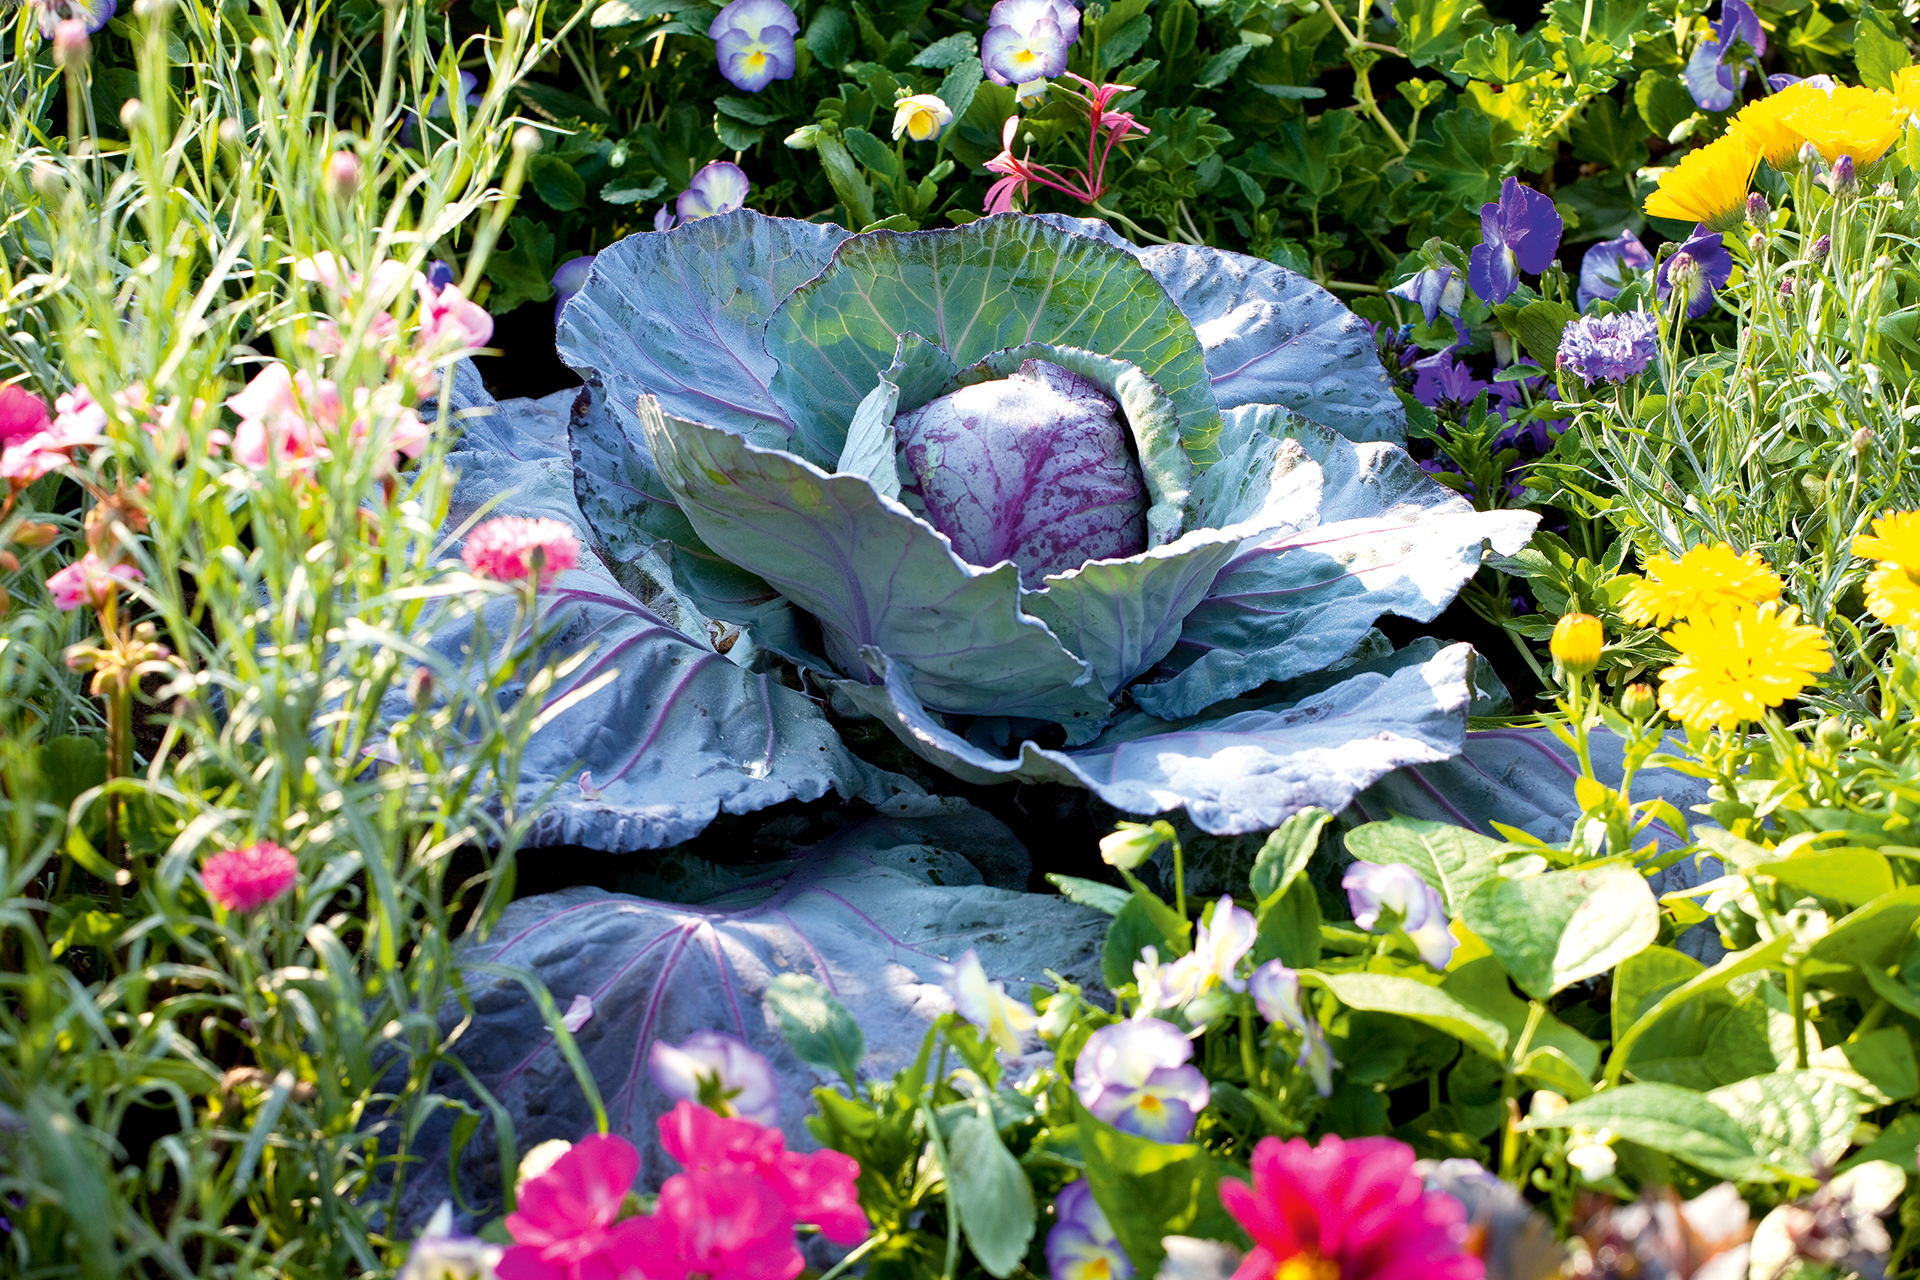 vegetable garden ideas - cabbage